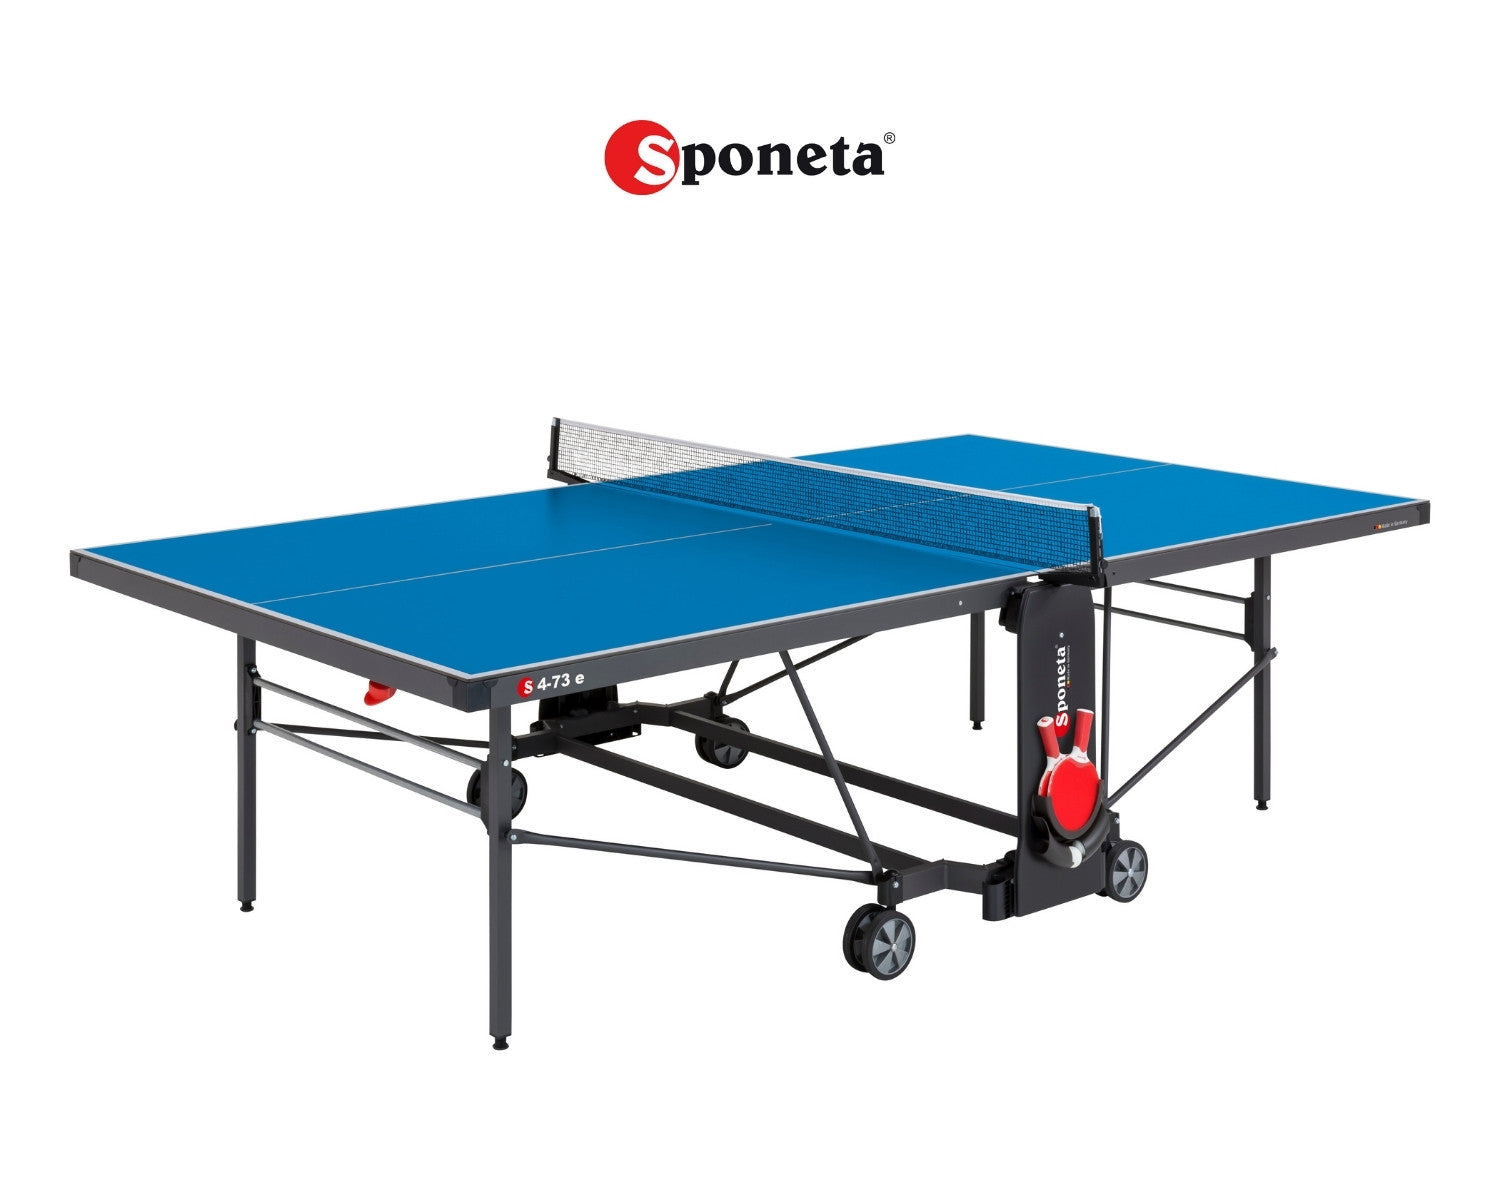 Sponeta Tavolo da Ping Pong Outdoor S 4-73 e